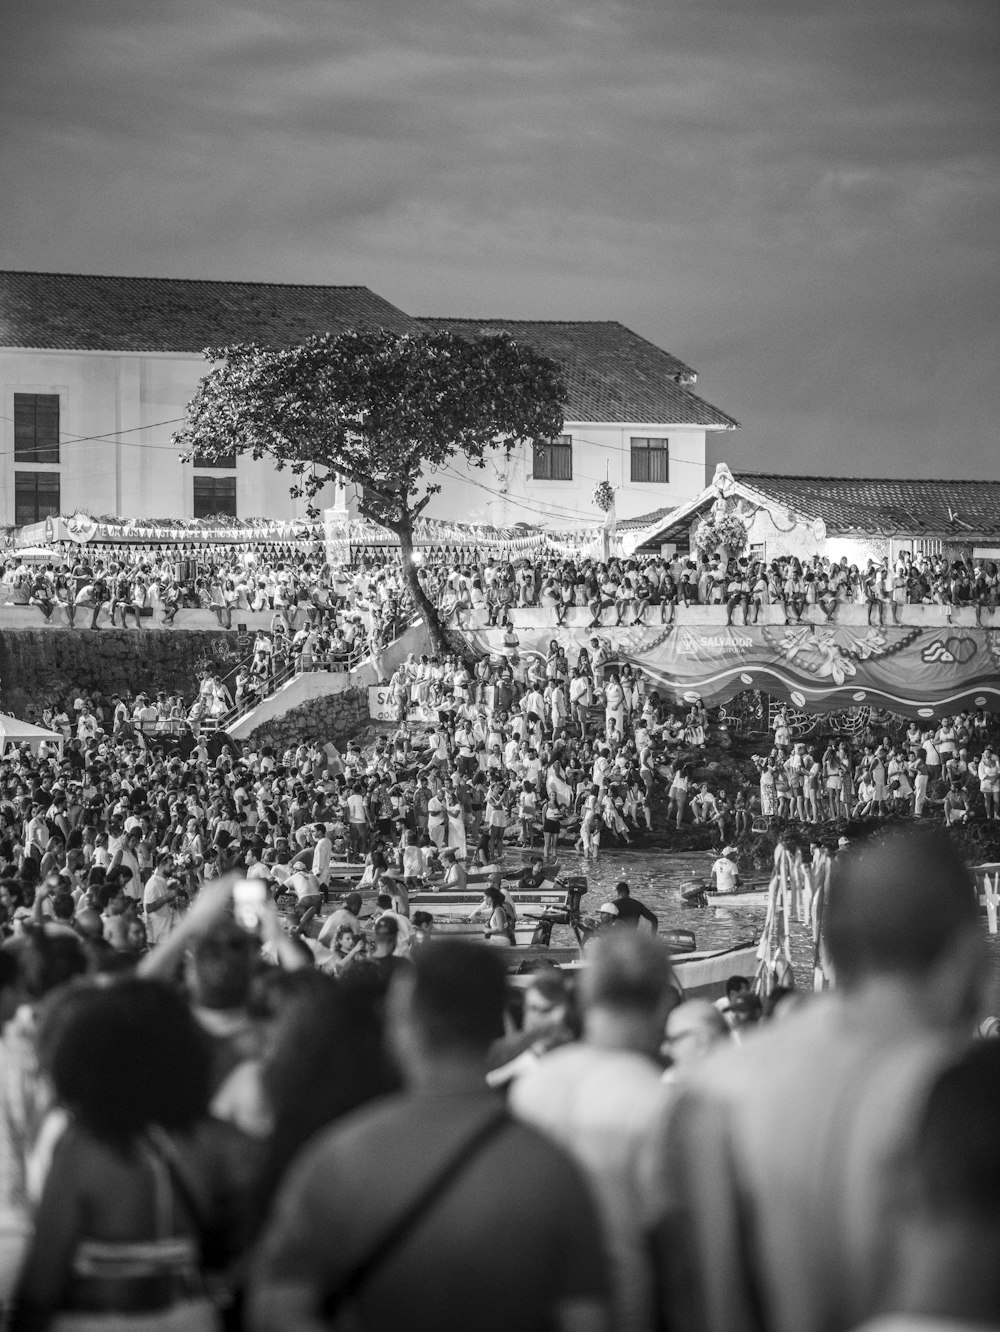 Una foto en blanco y negro de una multitud de personas